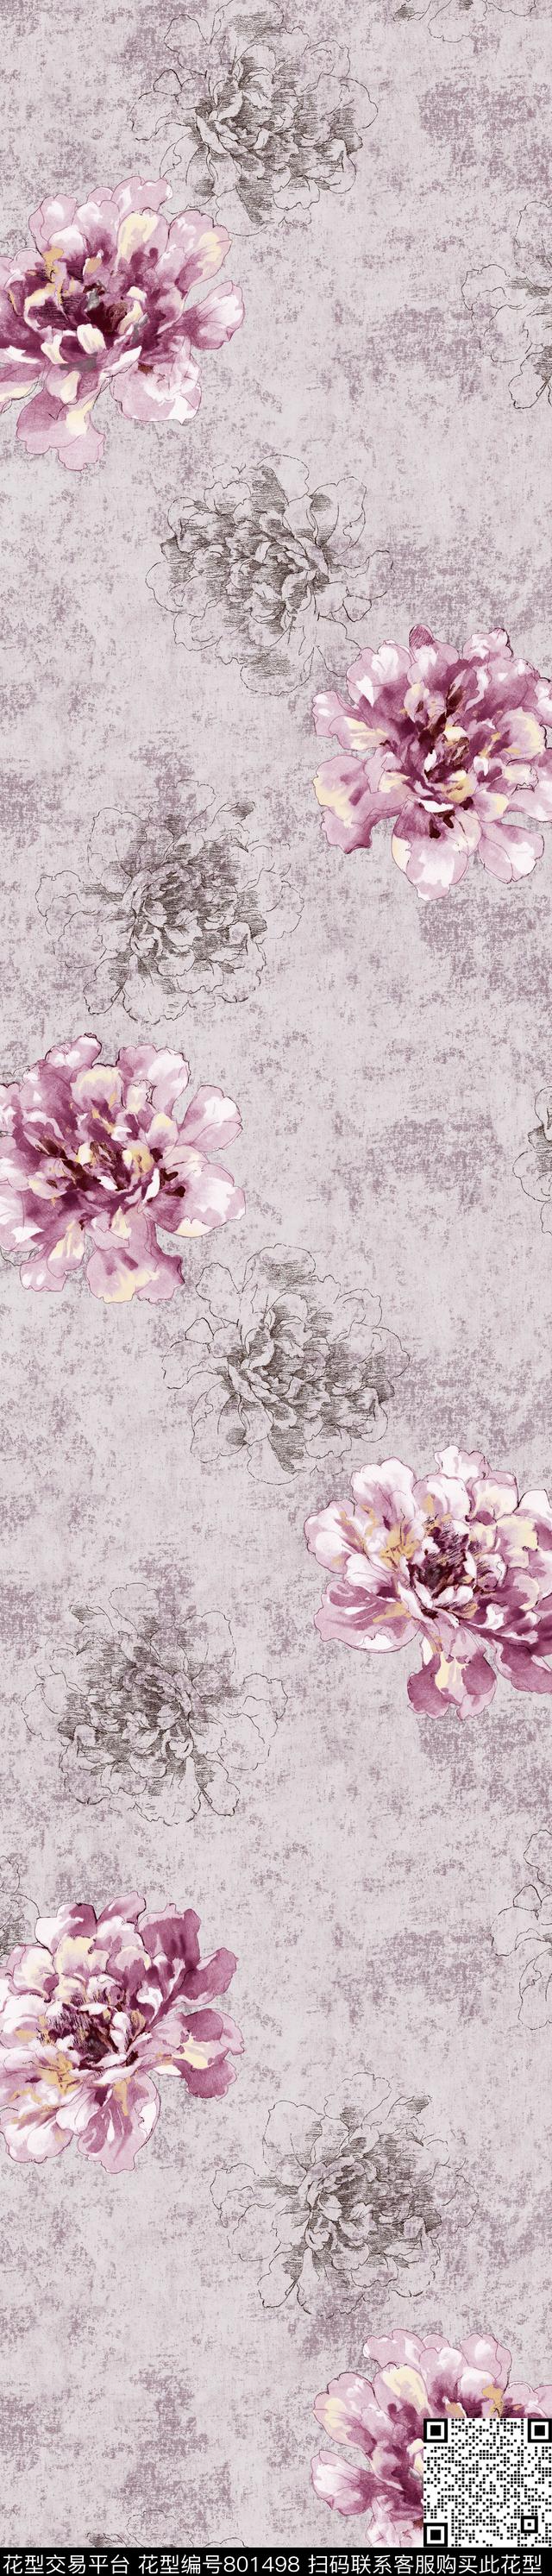 YJH170310a.jpg - 801498 - 大花 花卉 花朵 - 传统印花花型 － 窗帘花型设计 － 瓦栏